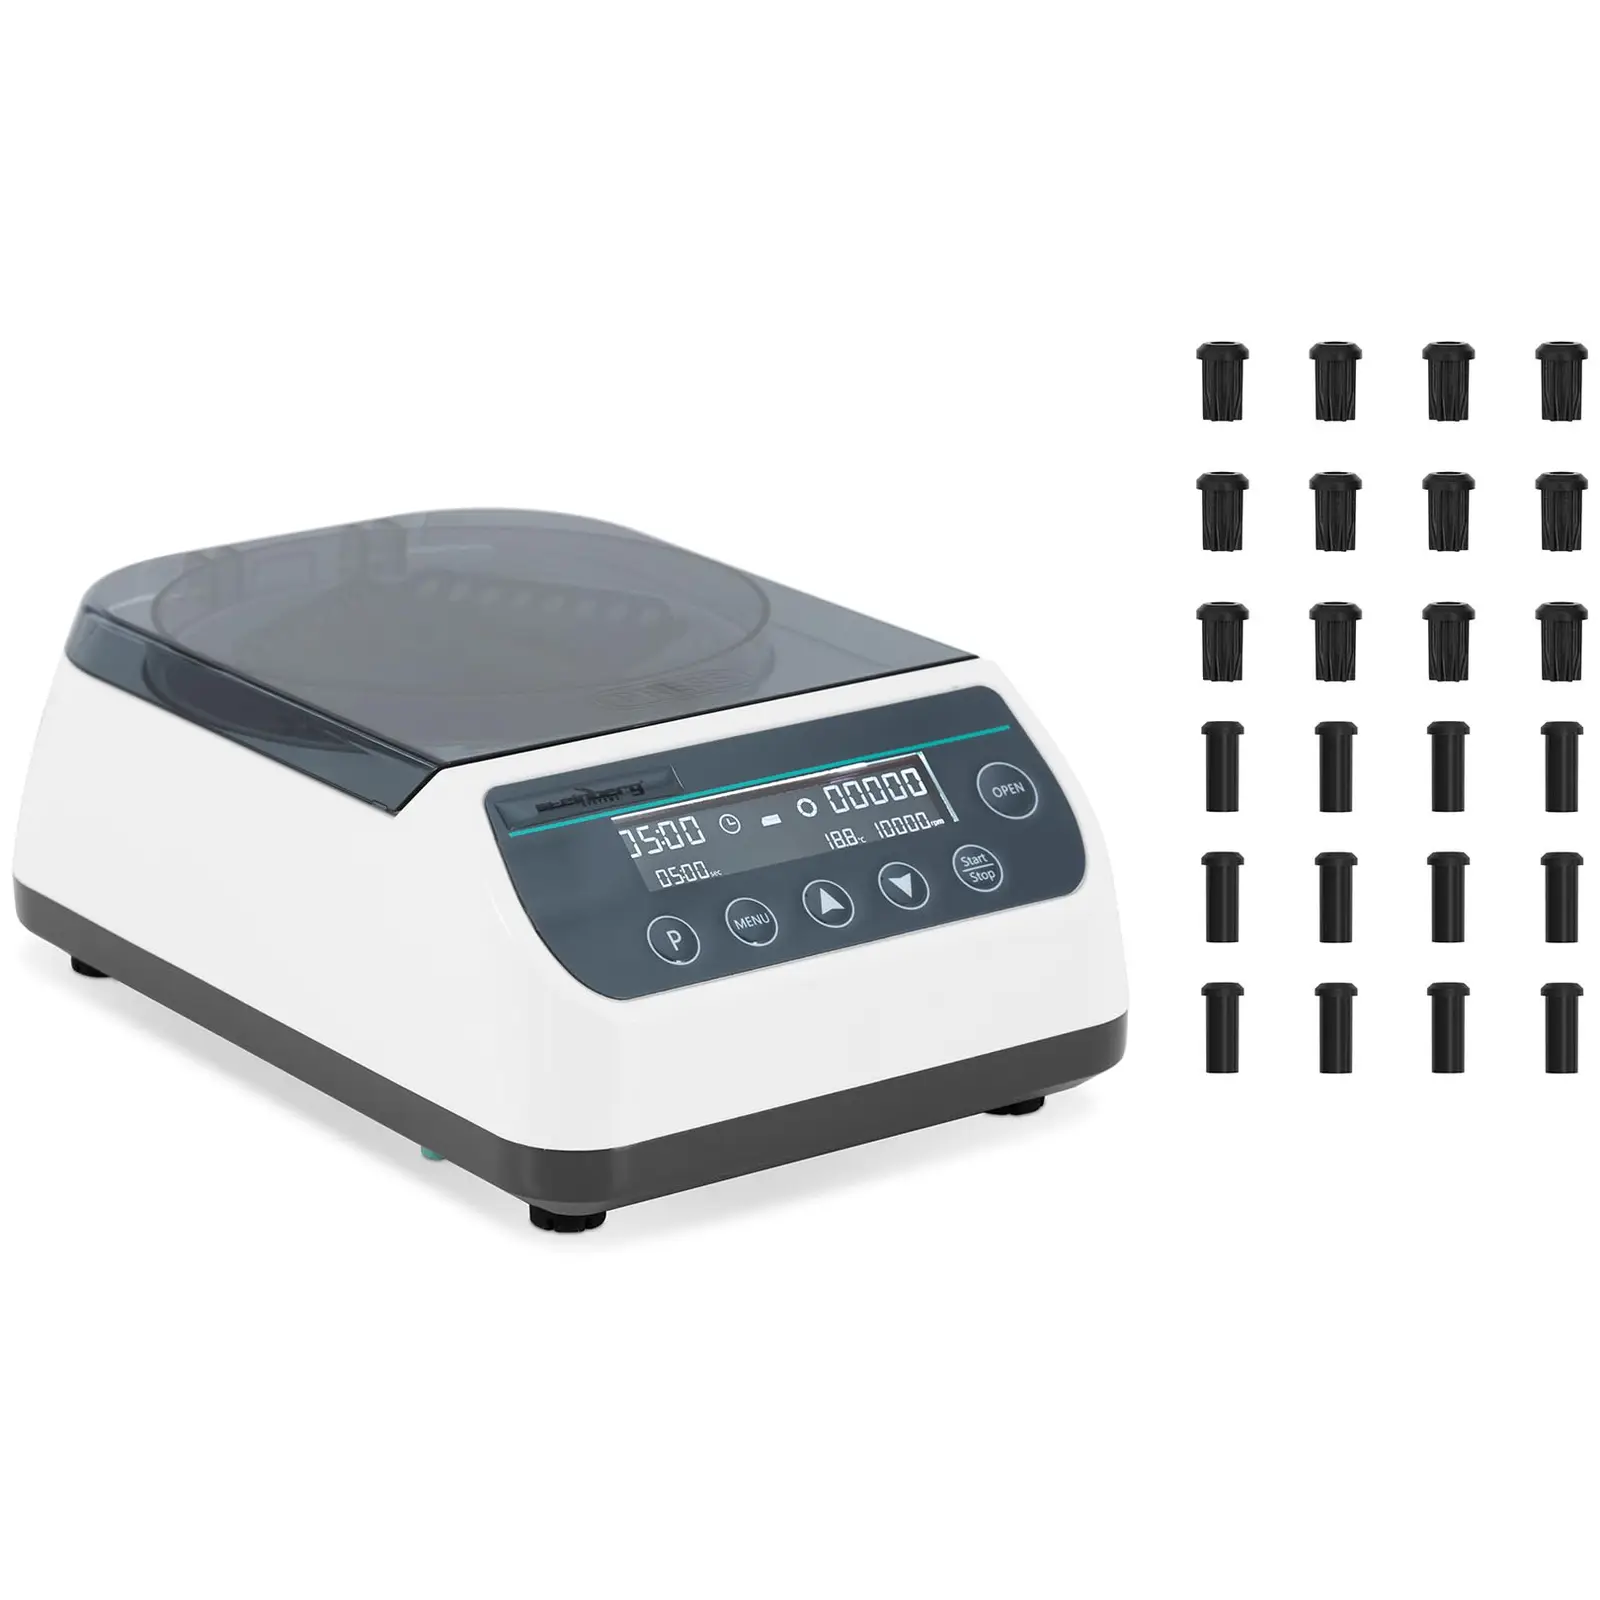 Centrífuga de sobremesa - Alta velocidad - Rotor 2 en 1 -  rpm - para 12 tubos / 4 tiras PCR - RZB 6708 xg